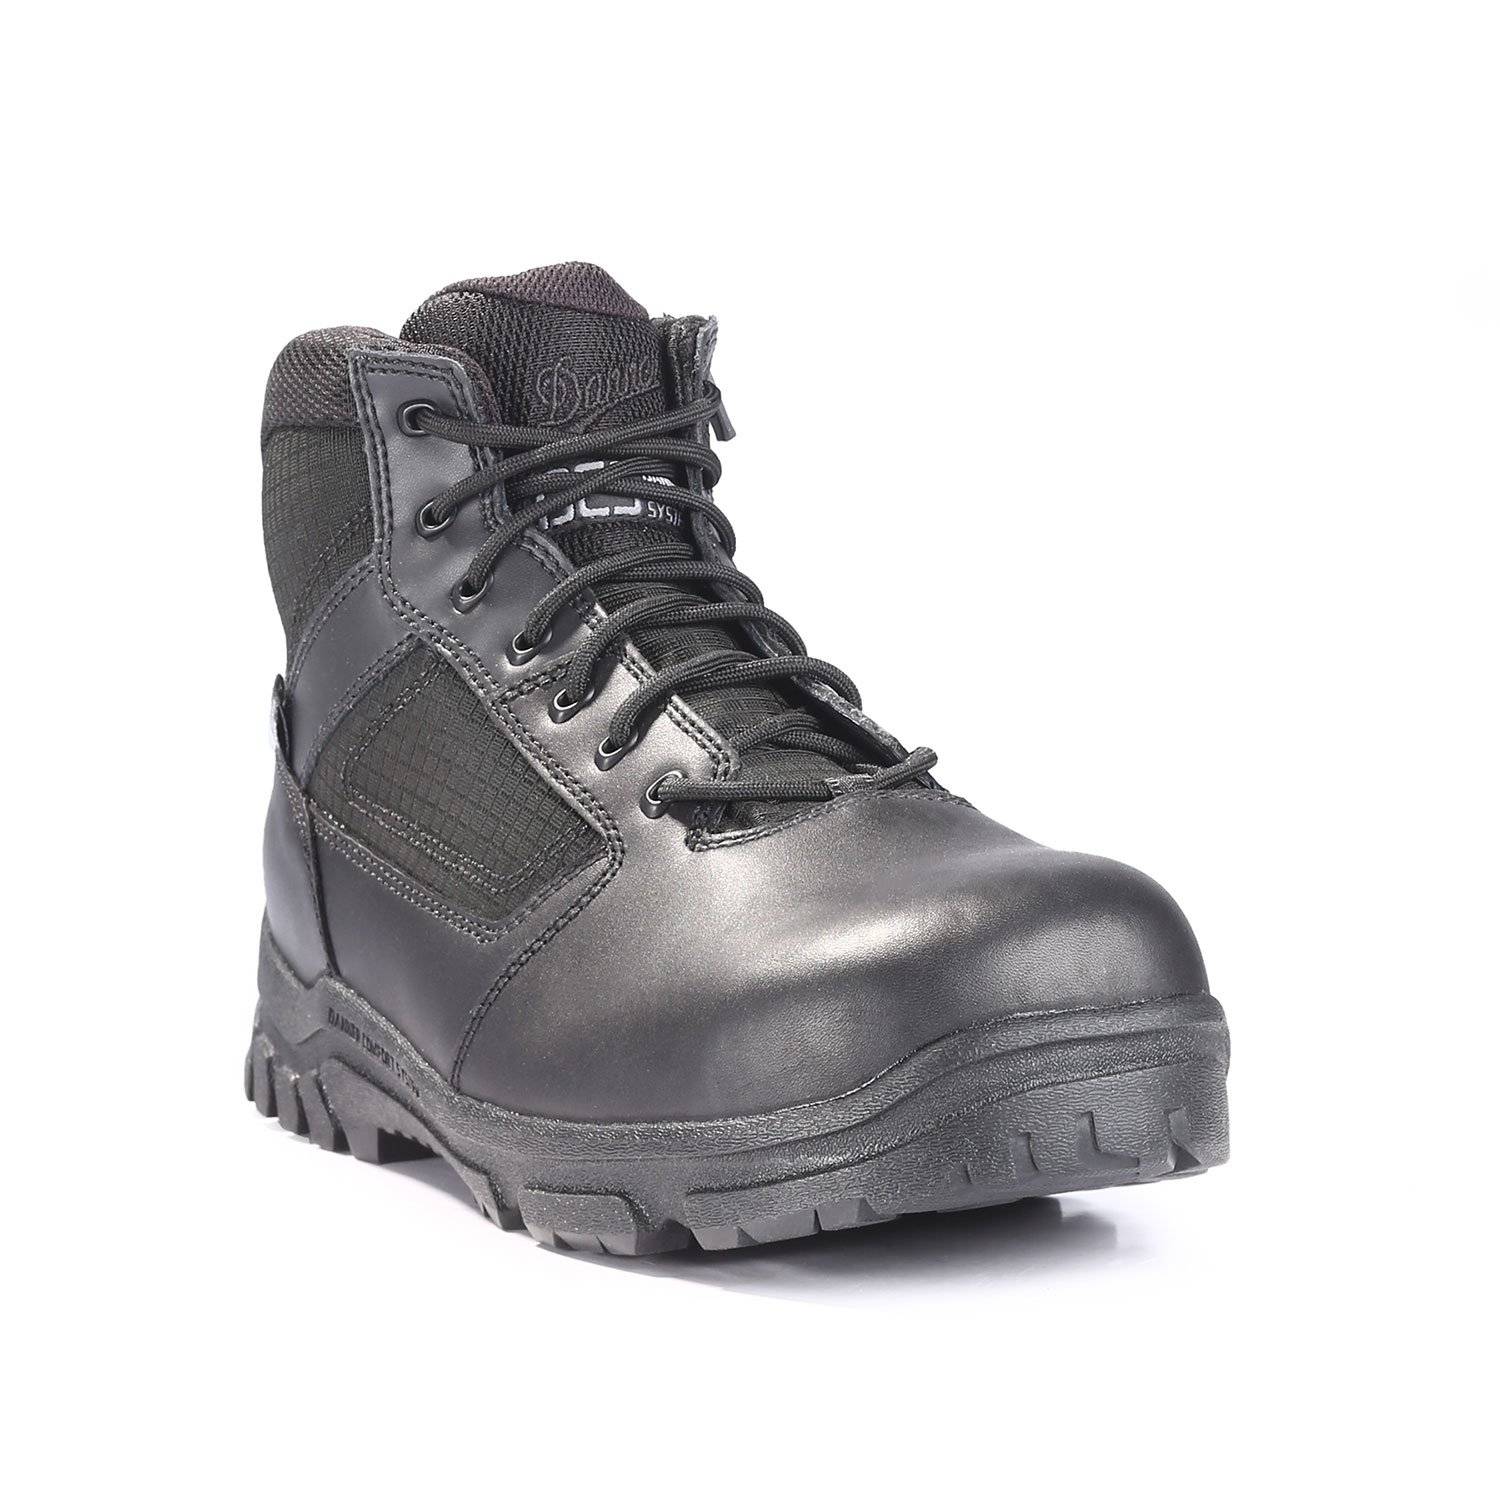 Danner Lookout 5.5" Composite Toe Side Zip Boot